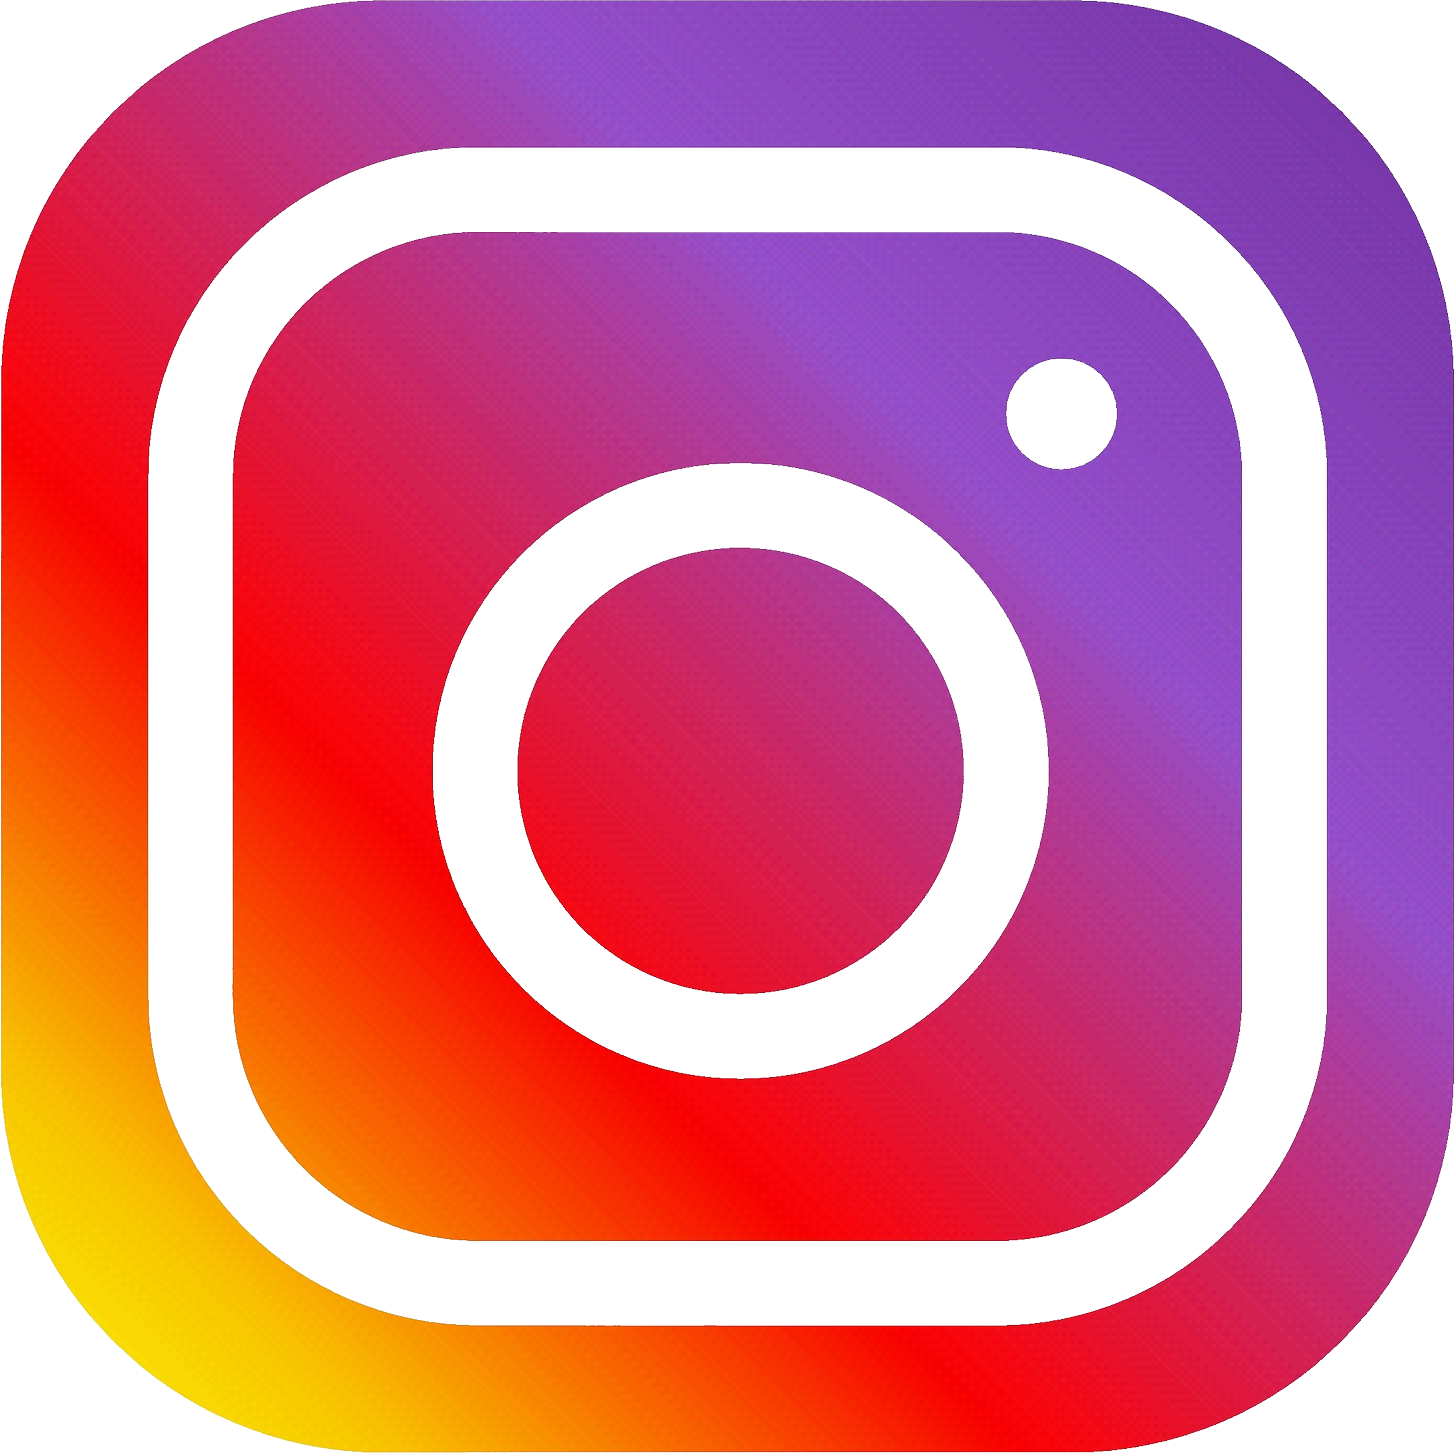 Résultat de recherche d'images pour "logo Instagram png"